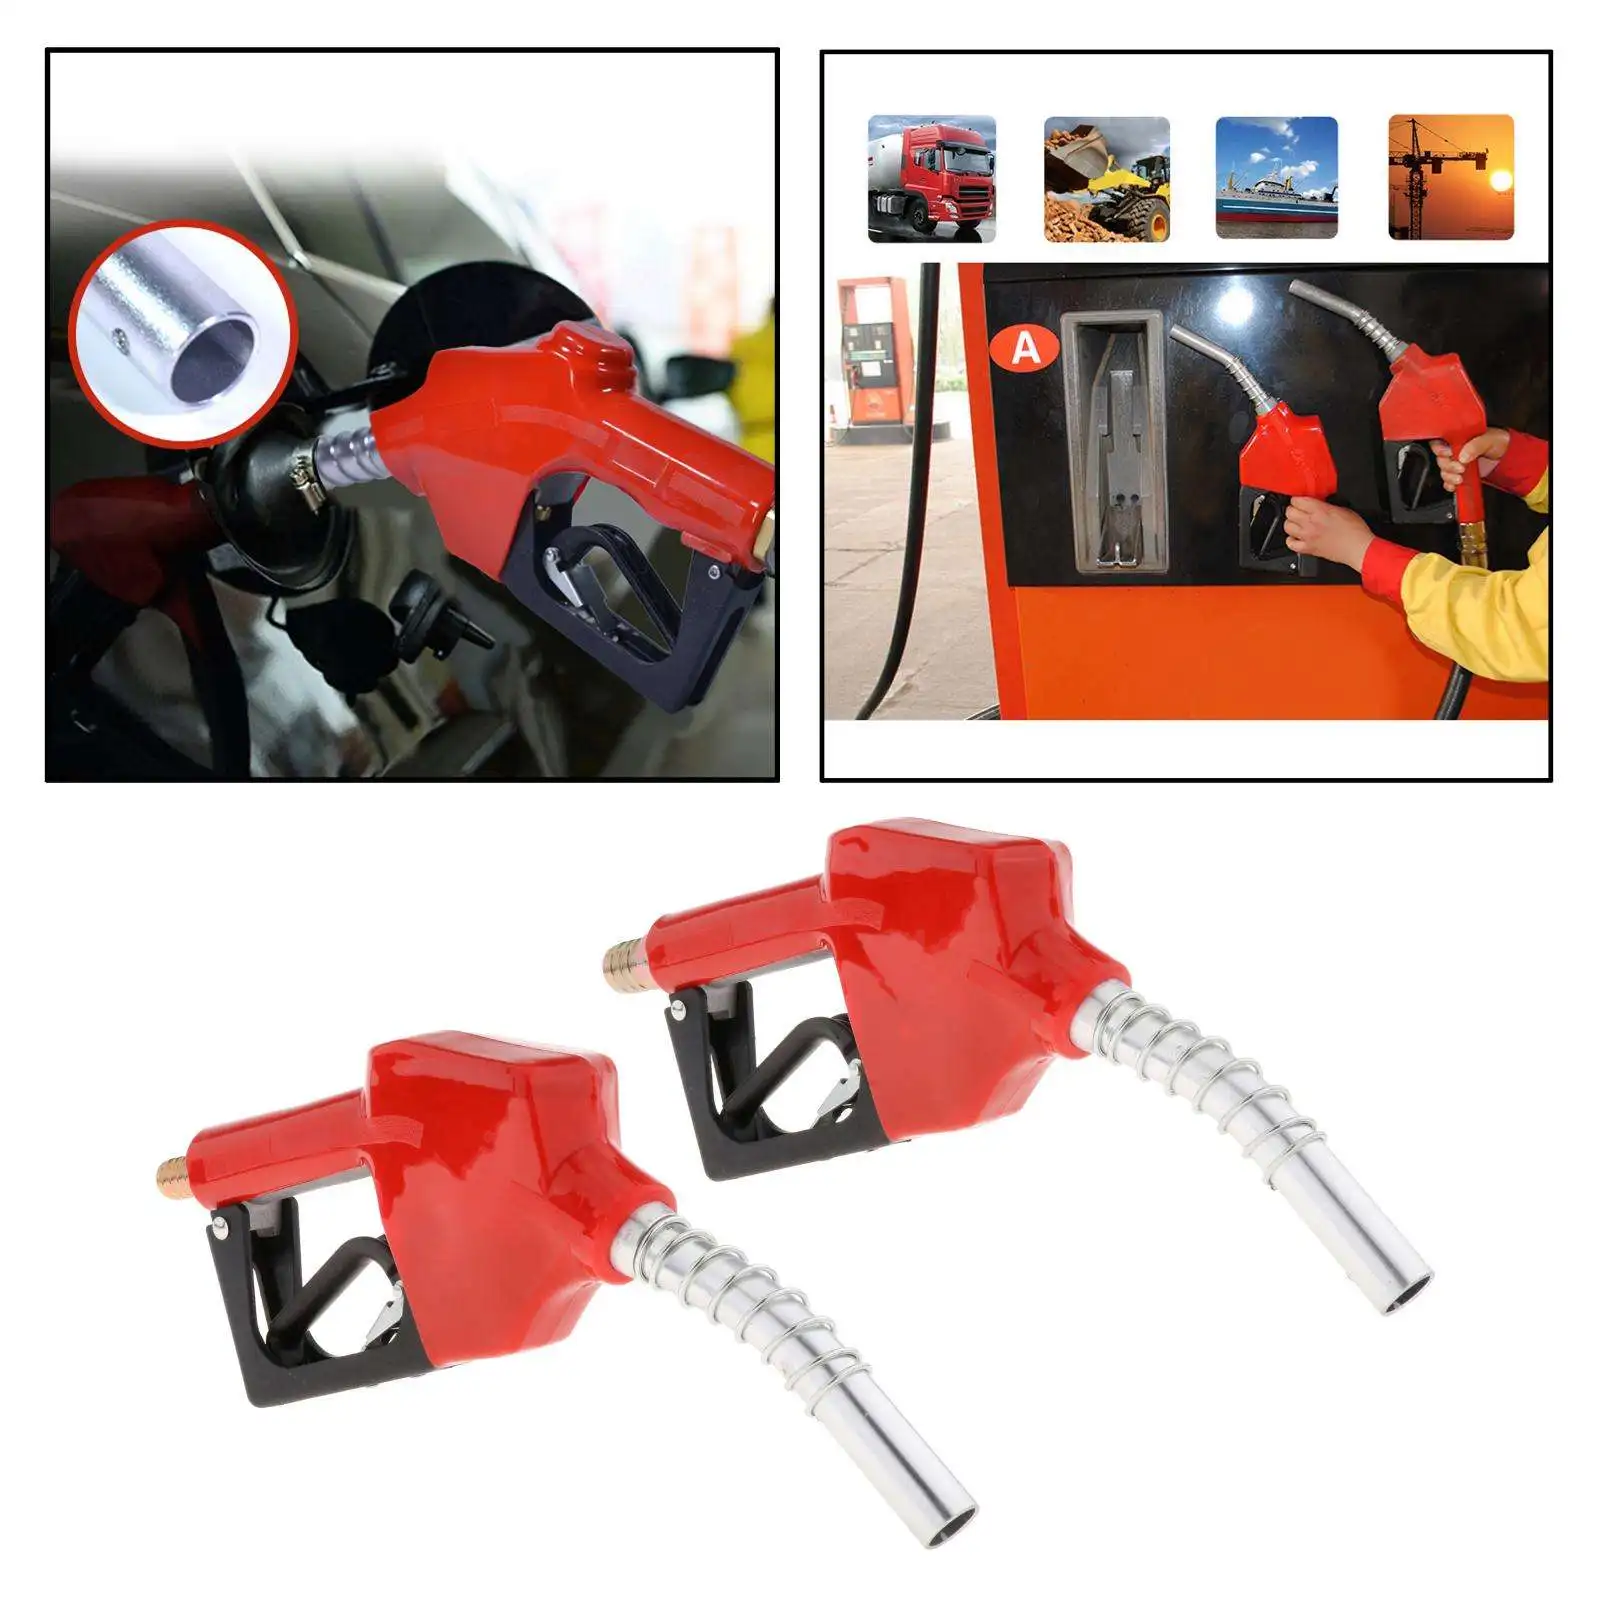 Aluminum Automatic Fuel Nozzle Auto Shut Off Petrol Refilling 0-60L/min 0.18MPa Fuel Oiler Dispensing Tool